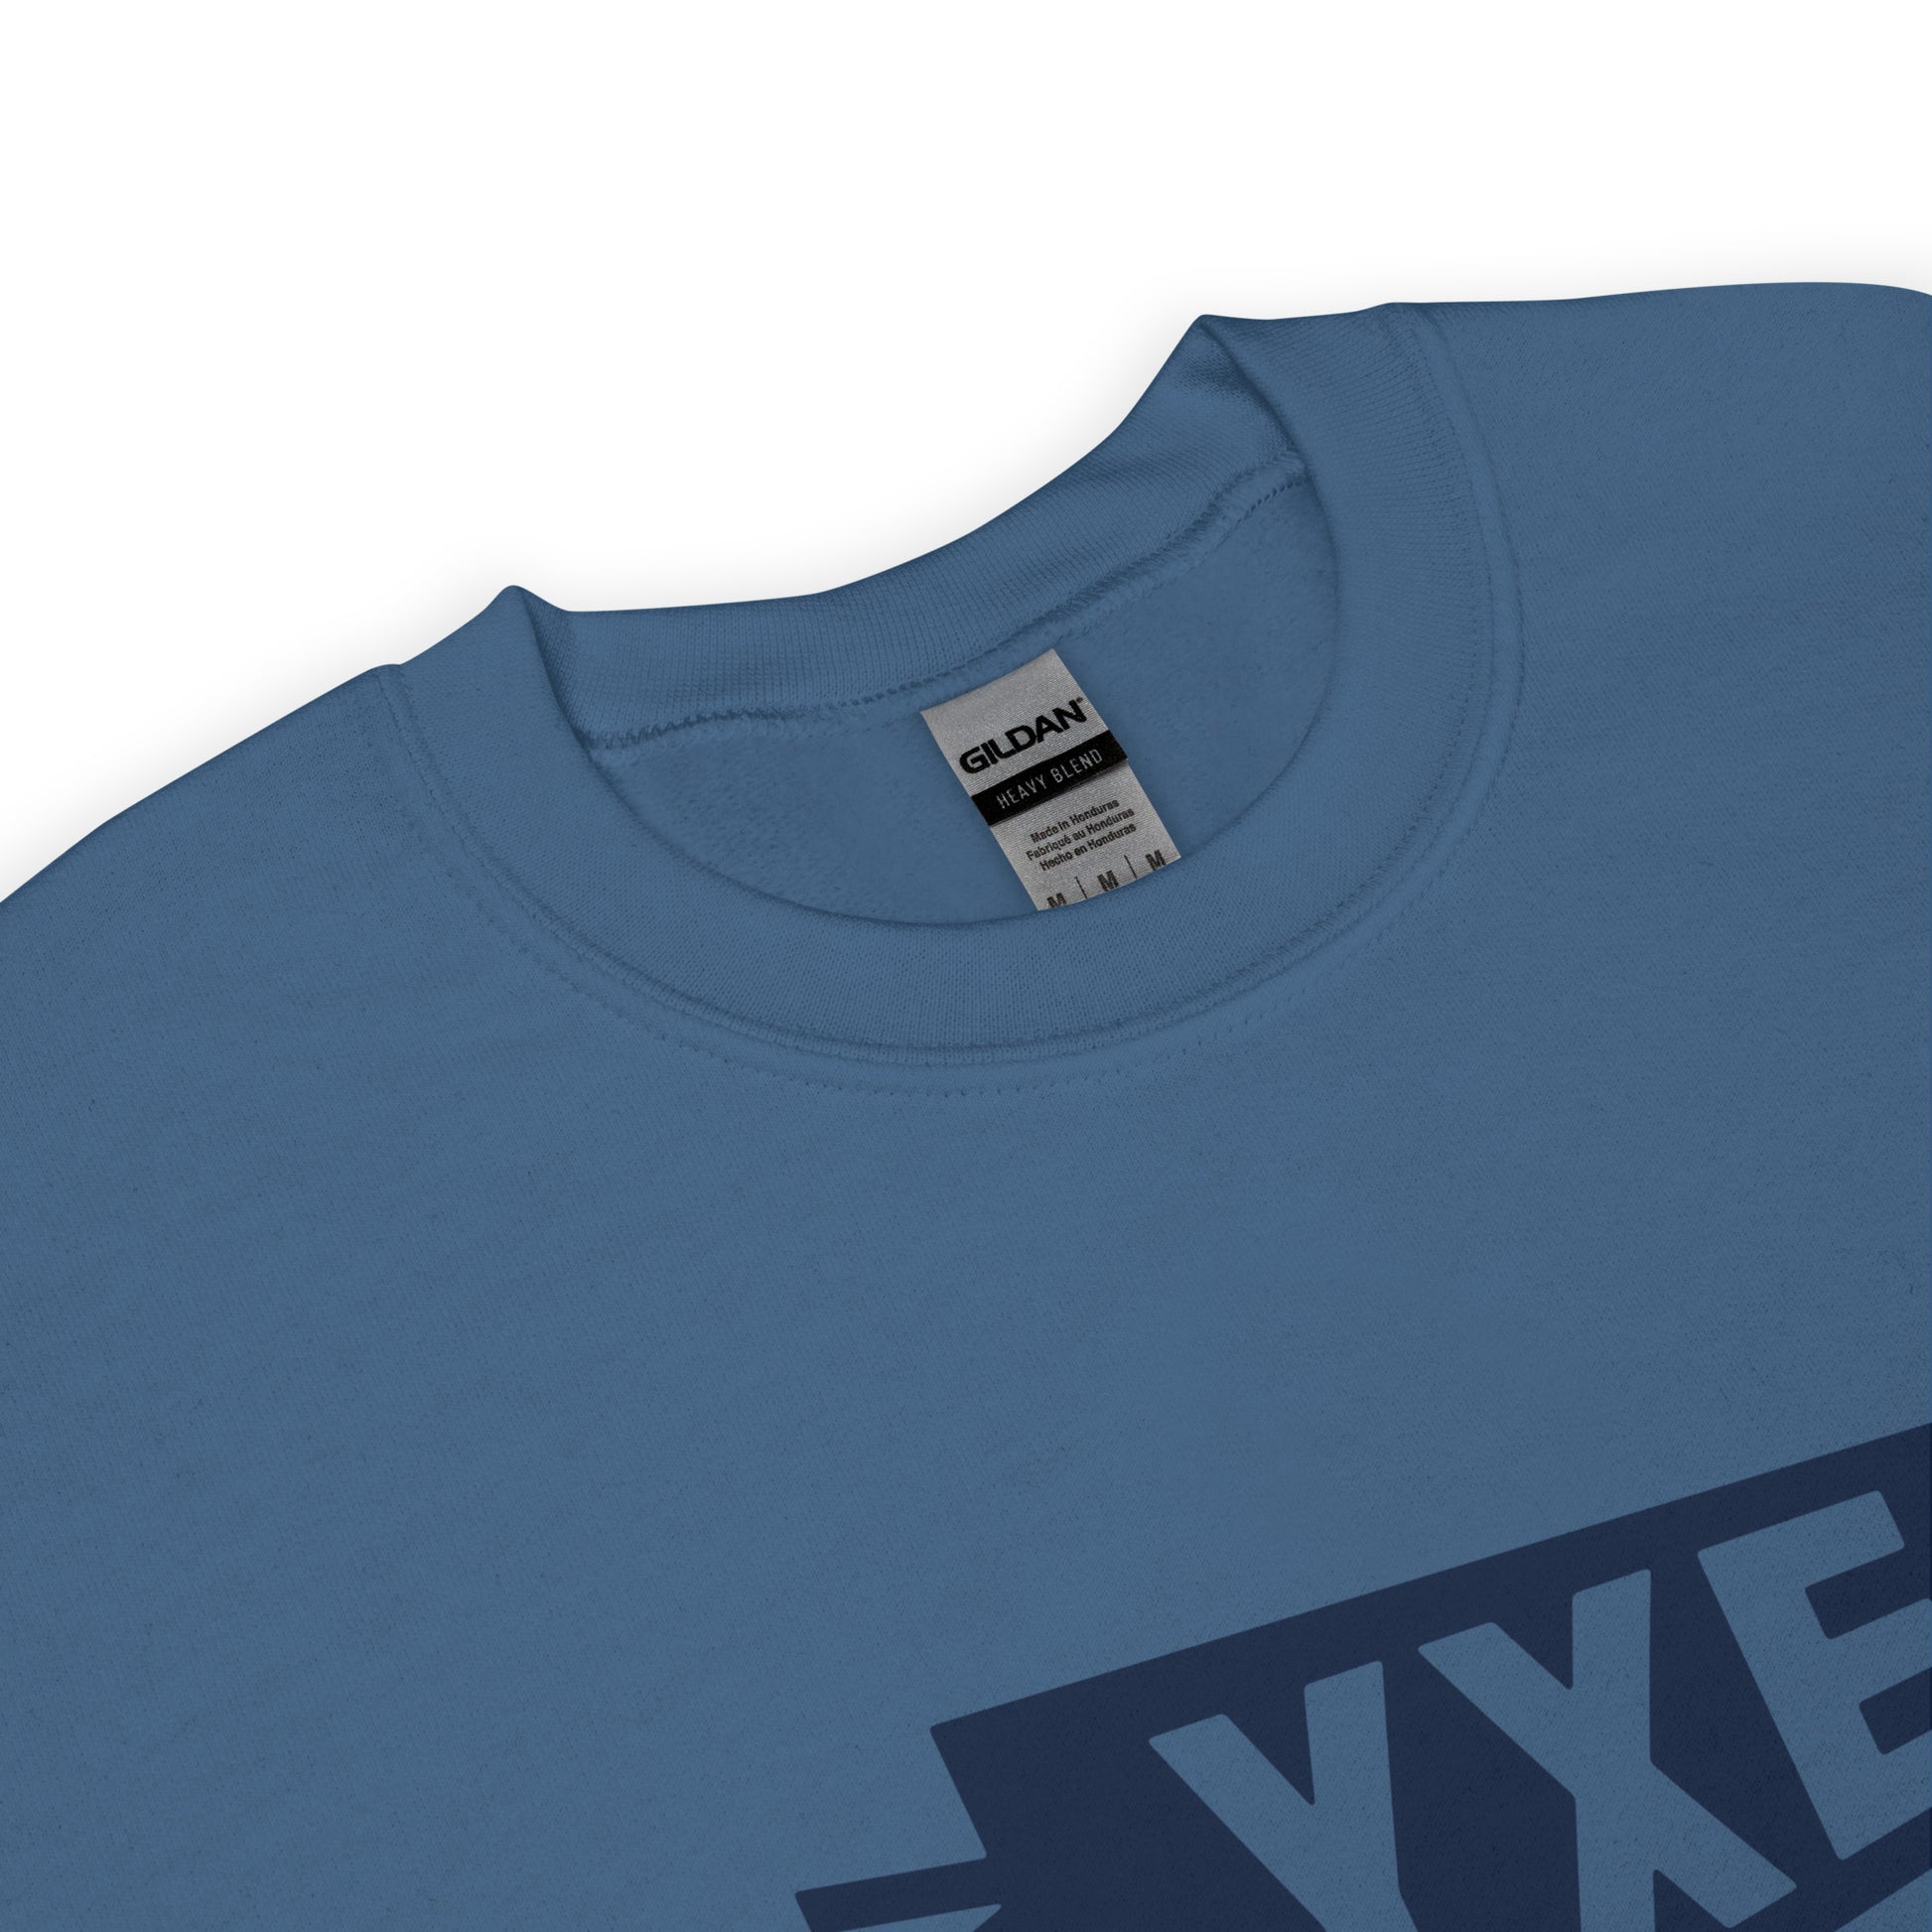 Airport Code Sweatshirt - Navy Blue Graphic • YXE Saskatoon • YHM Designs - Image 04